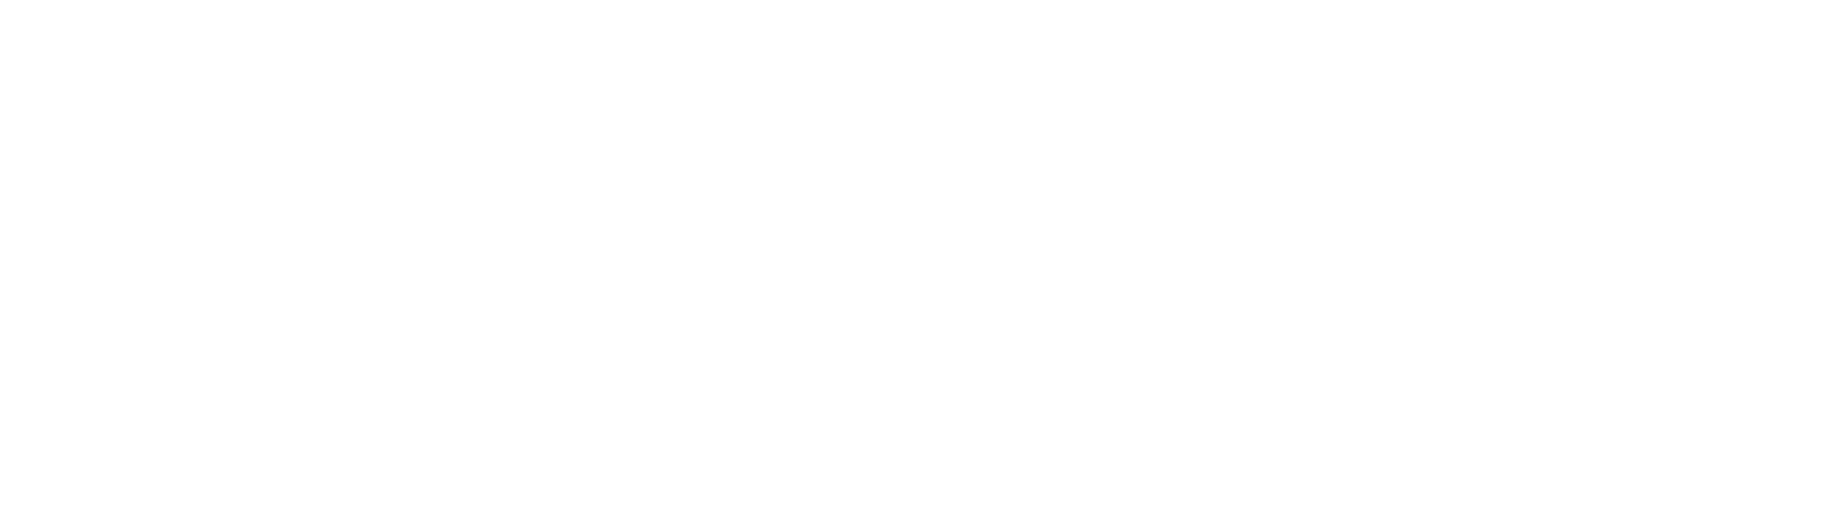 TangoAlpha3-Master-Logo-Concepts_Combination Mark White